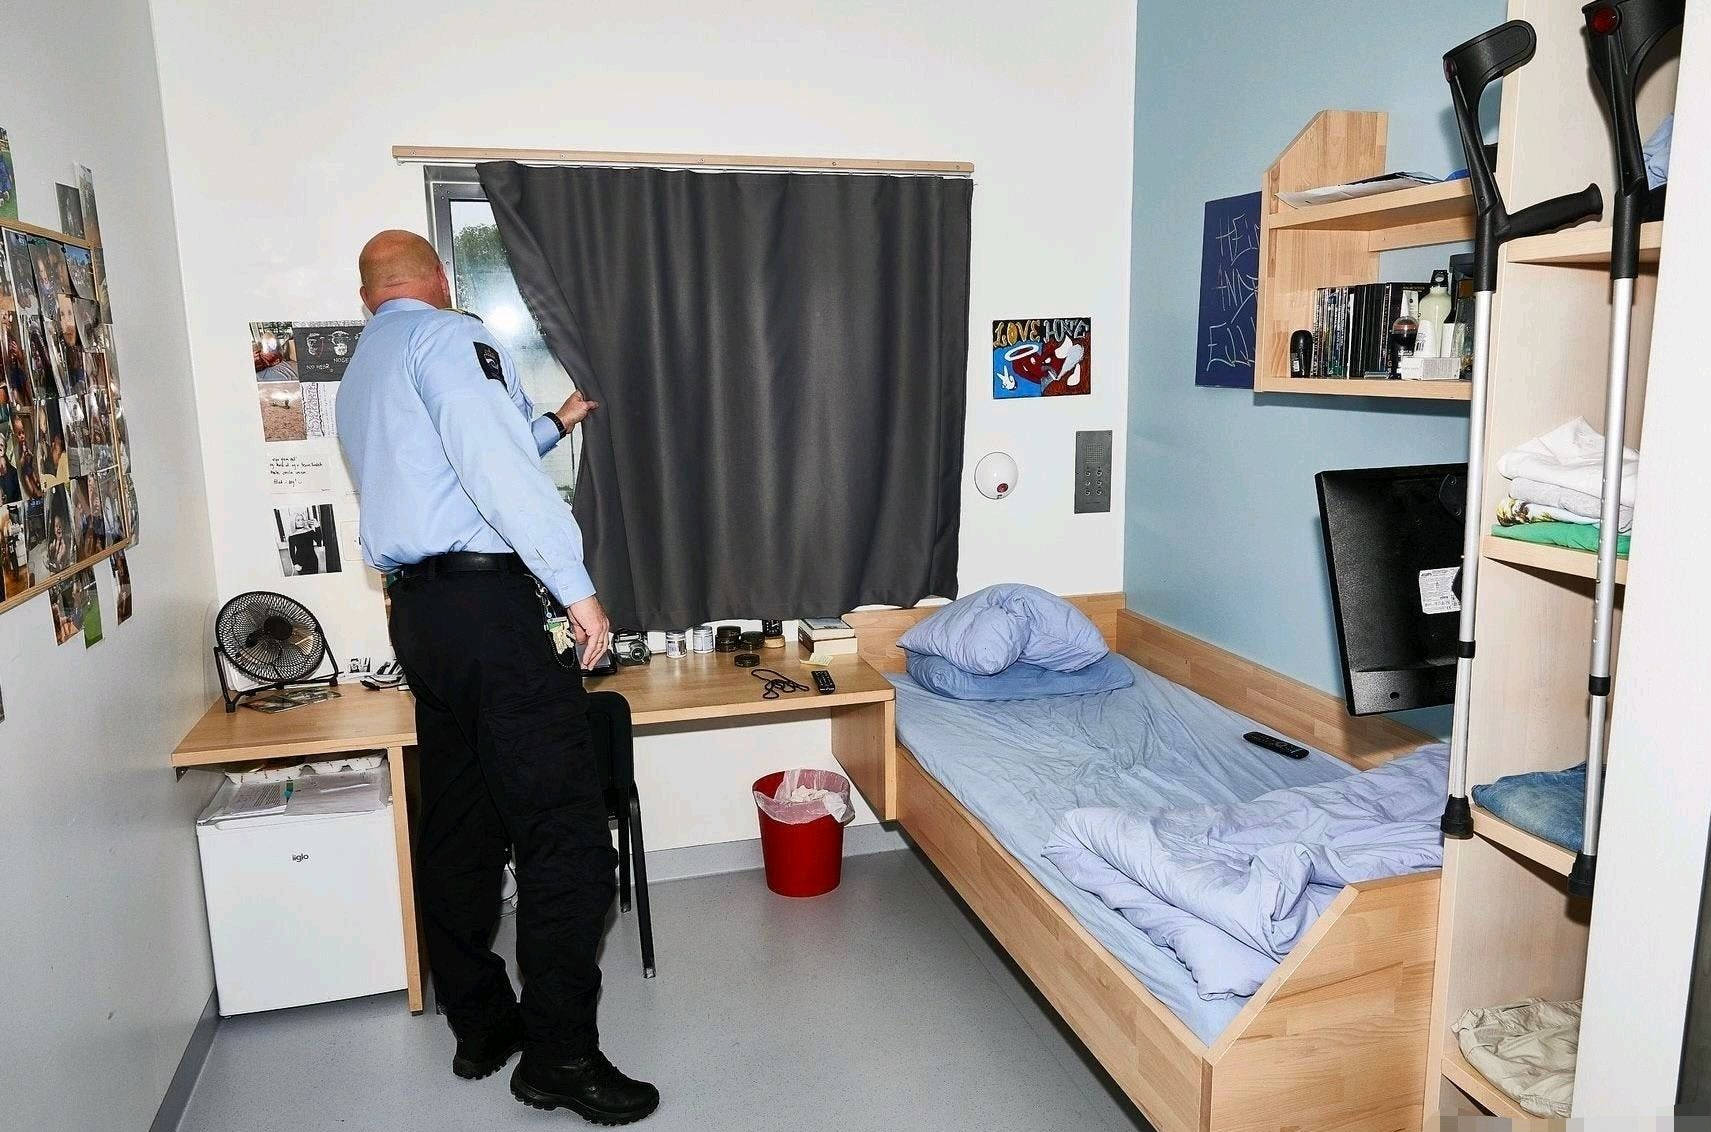 原创挪威豪华监狱曾投资14亿元有美女狱警陪伴丝毫不弱于星级酒店